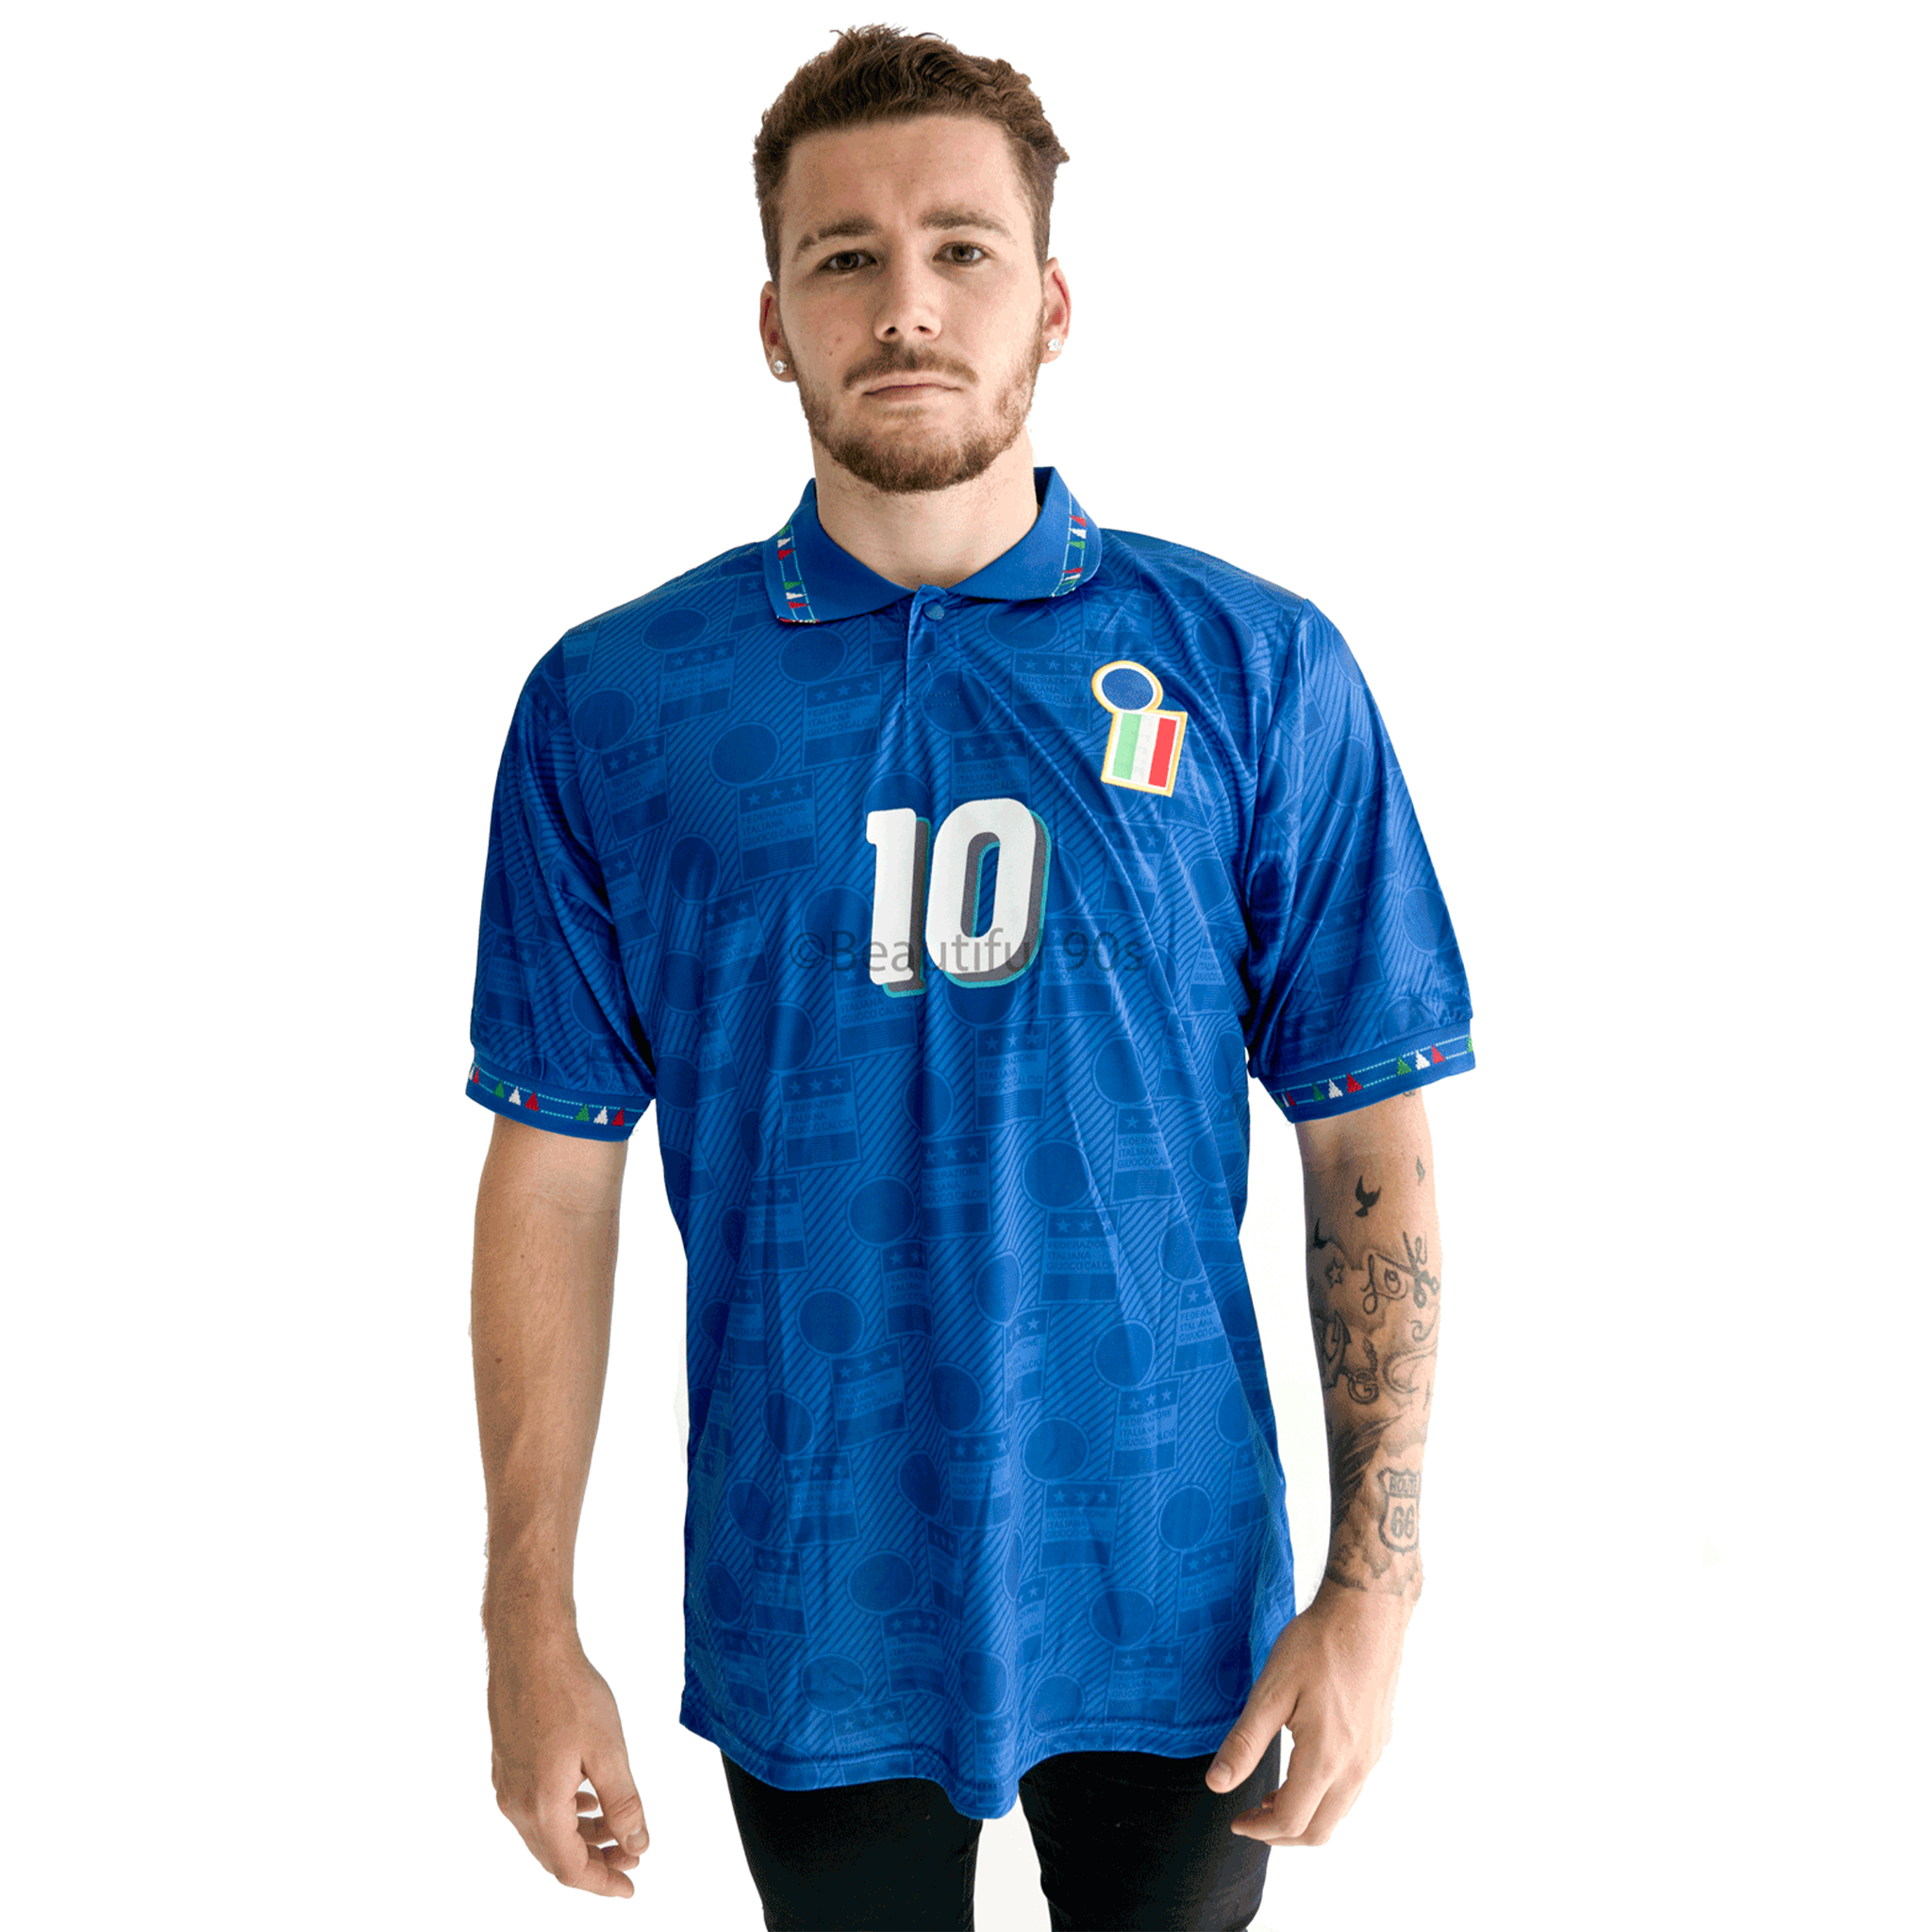 italian football team jersey